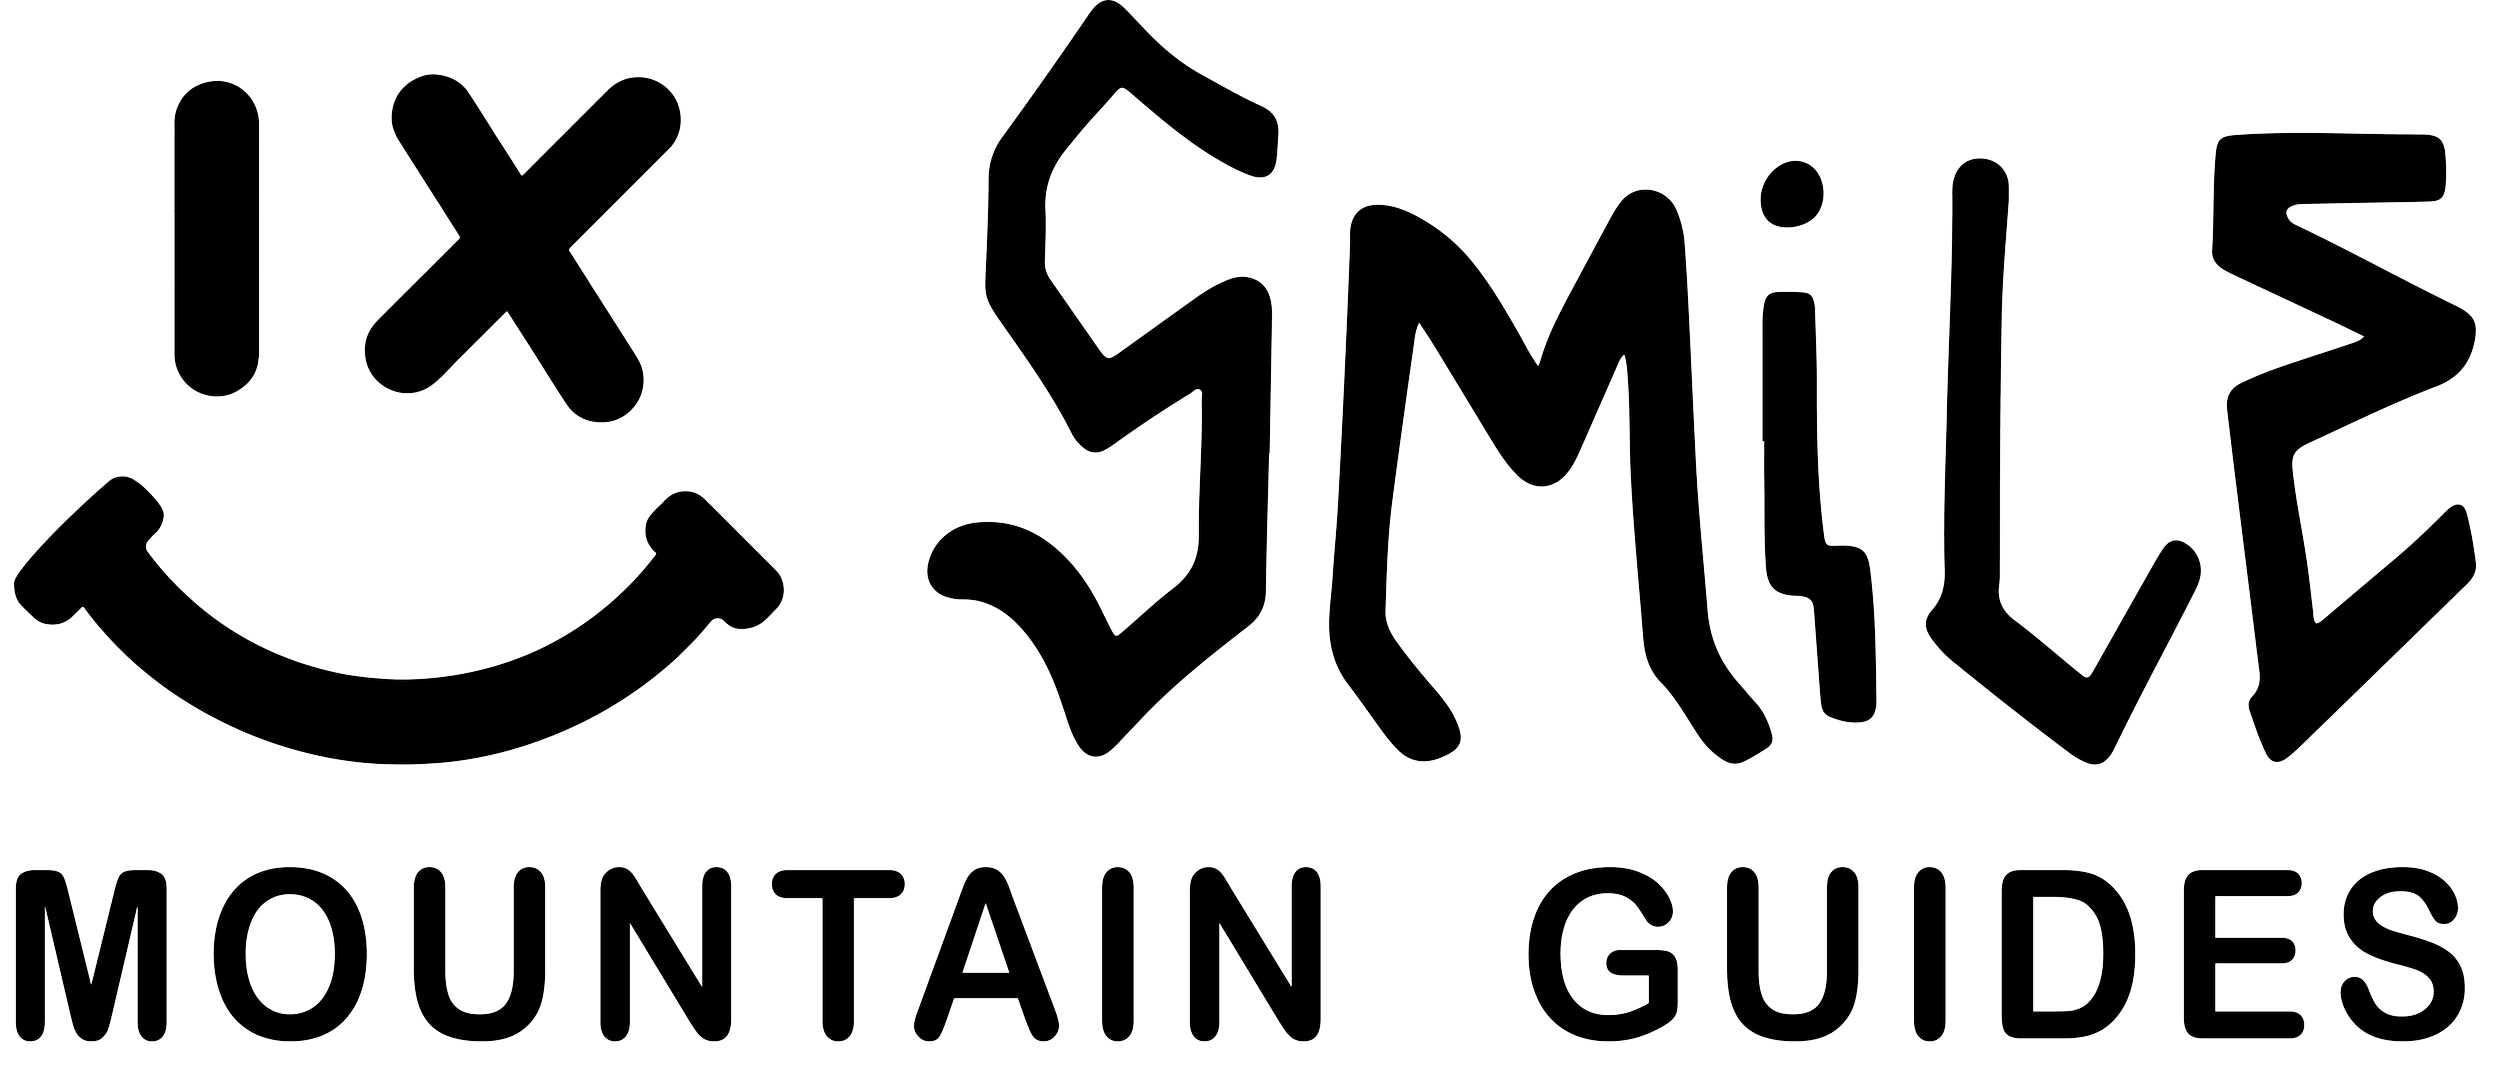 SmileMountainGuides_Full Logo Black@4x.png